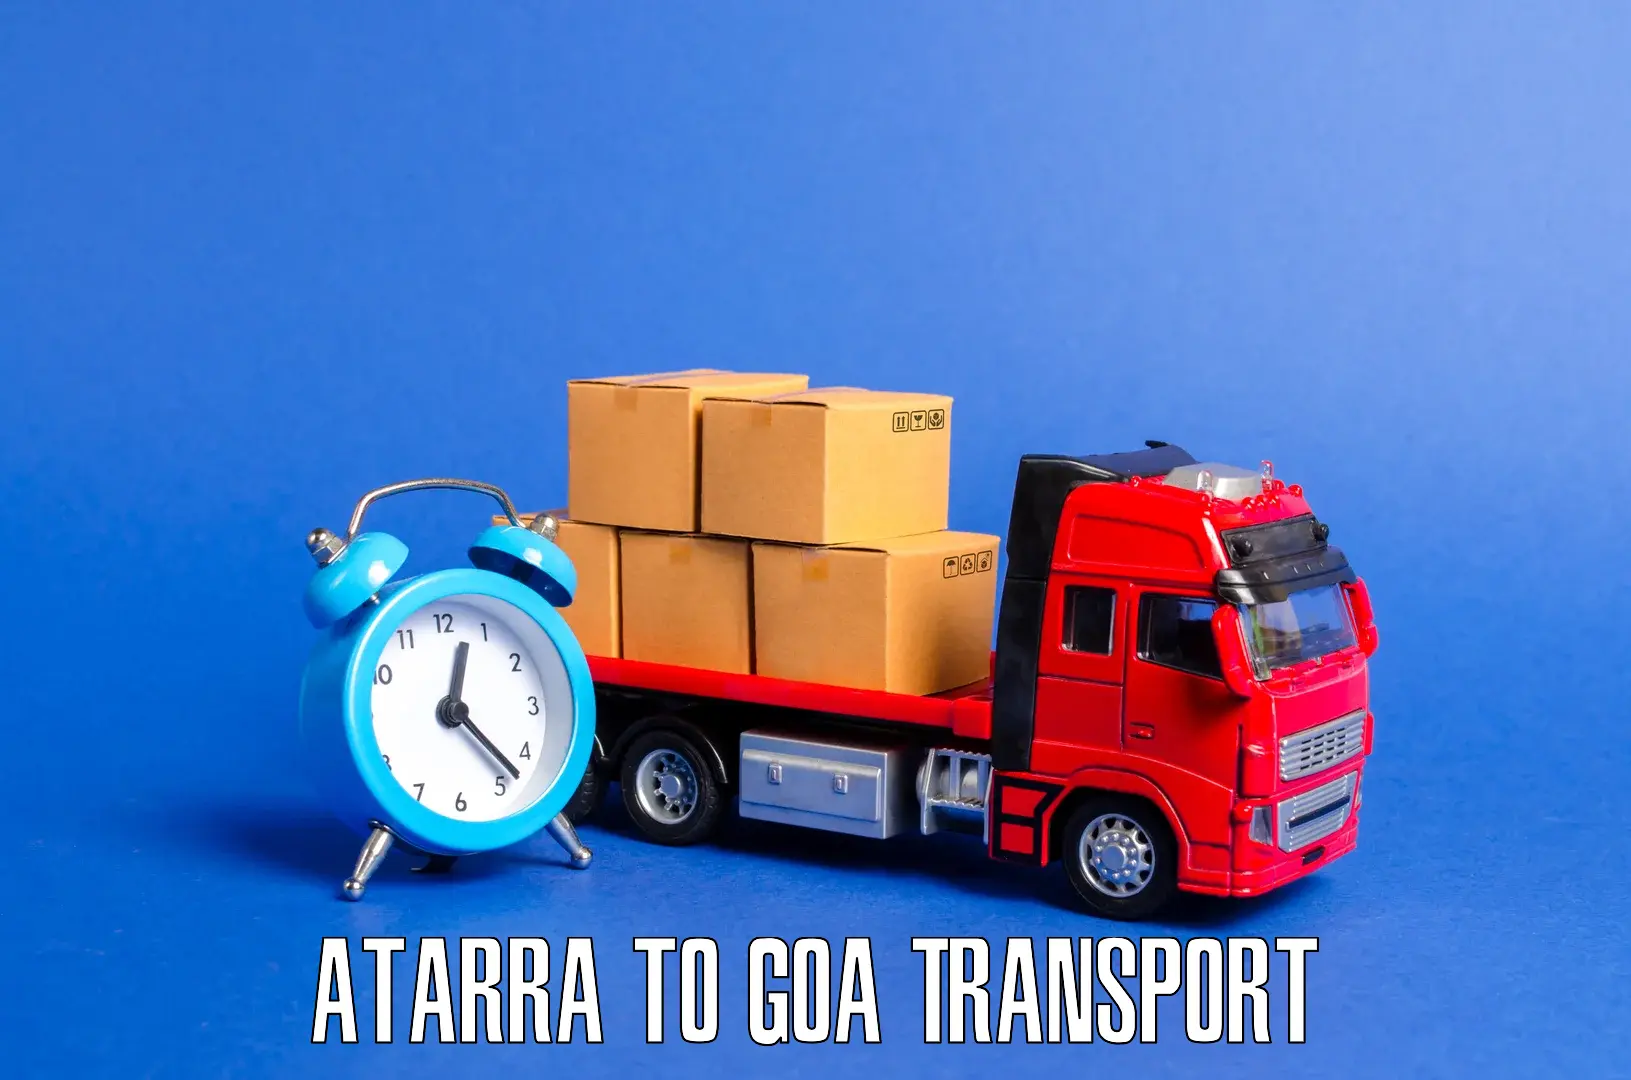 Daily transport service in Atarra to Canacona